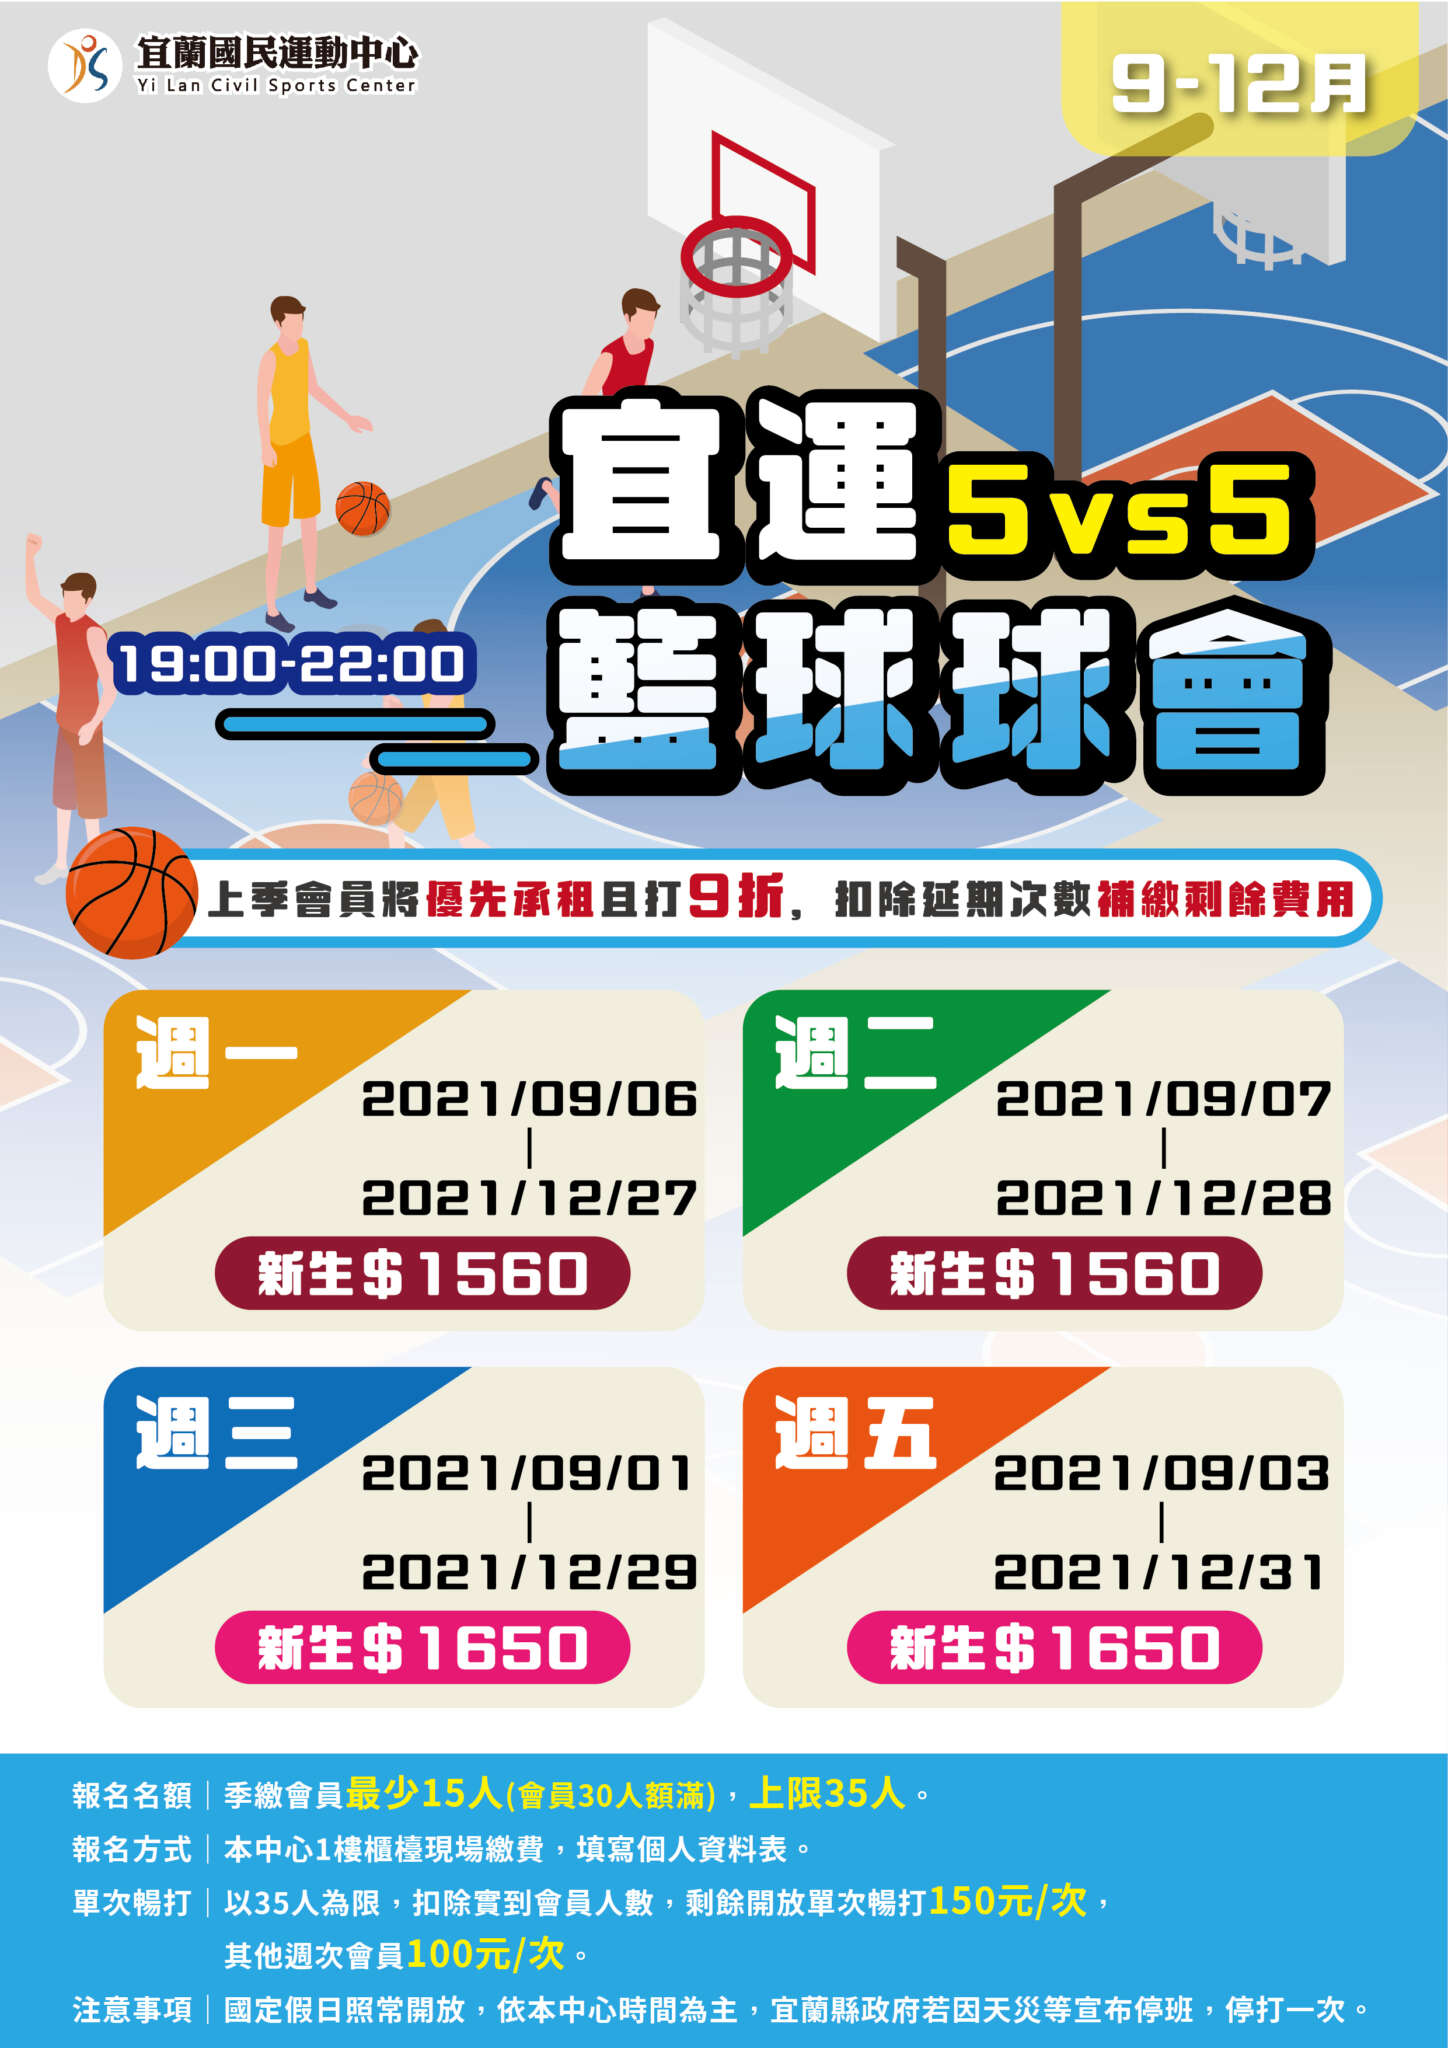 籃球球會報招募資訊海報(jpg)